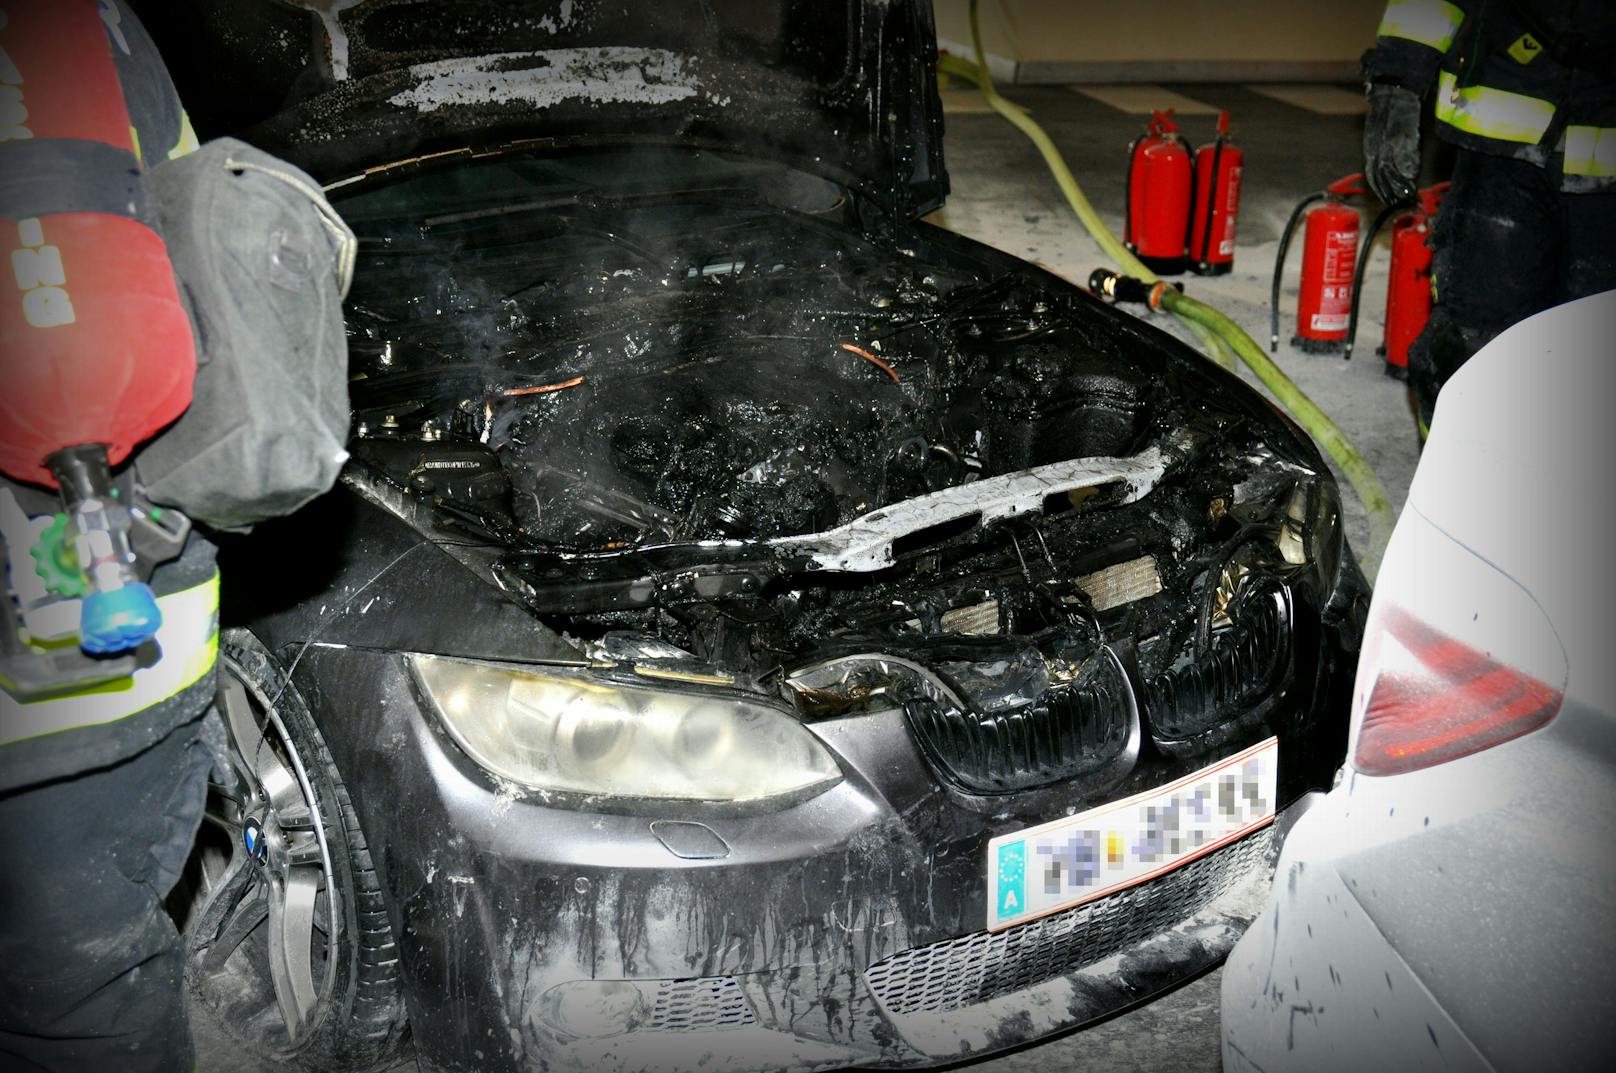 Aus dem Motorraum schlugen plötzlich Flammen. Mit Feuerlöschern konnte das Feuer in Schach gehalten werden.